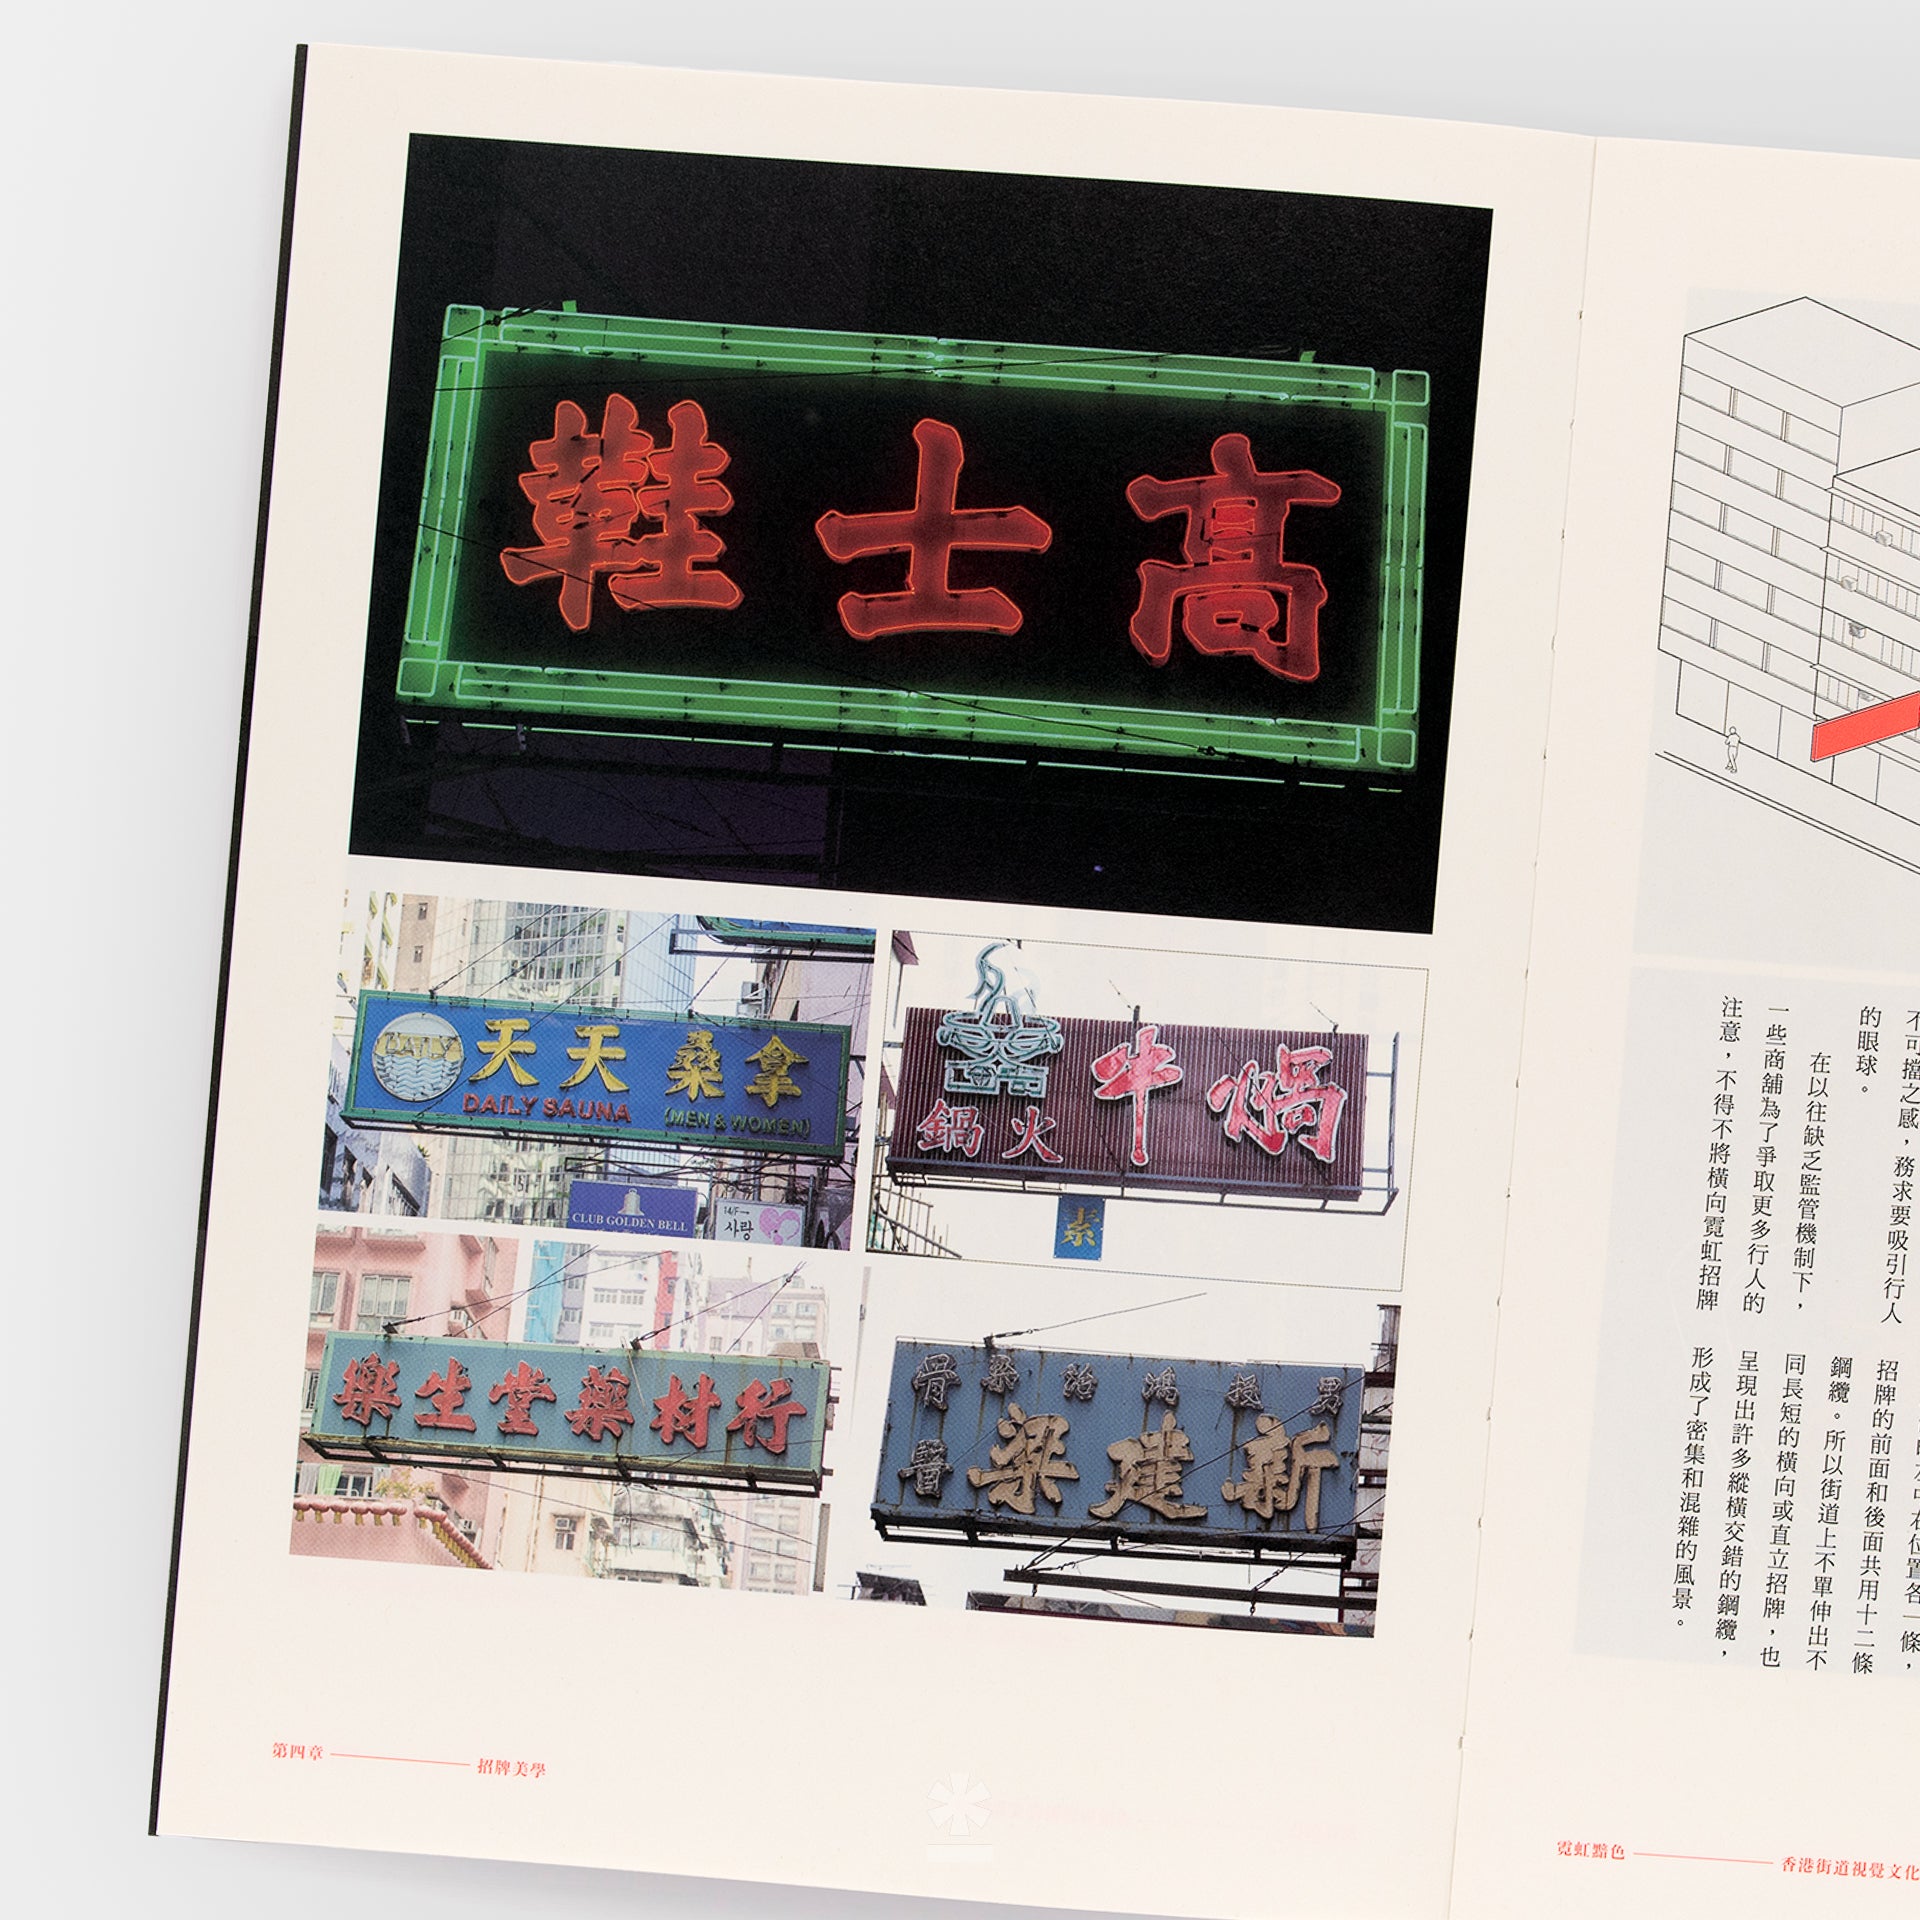 霓虹黯色 : 香港街道視覺文化記錄